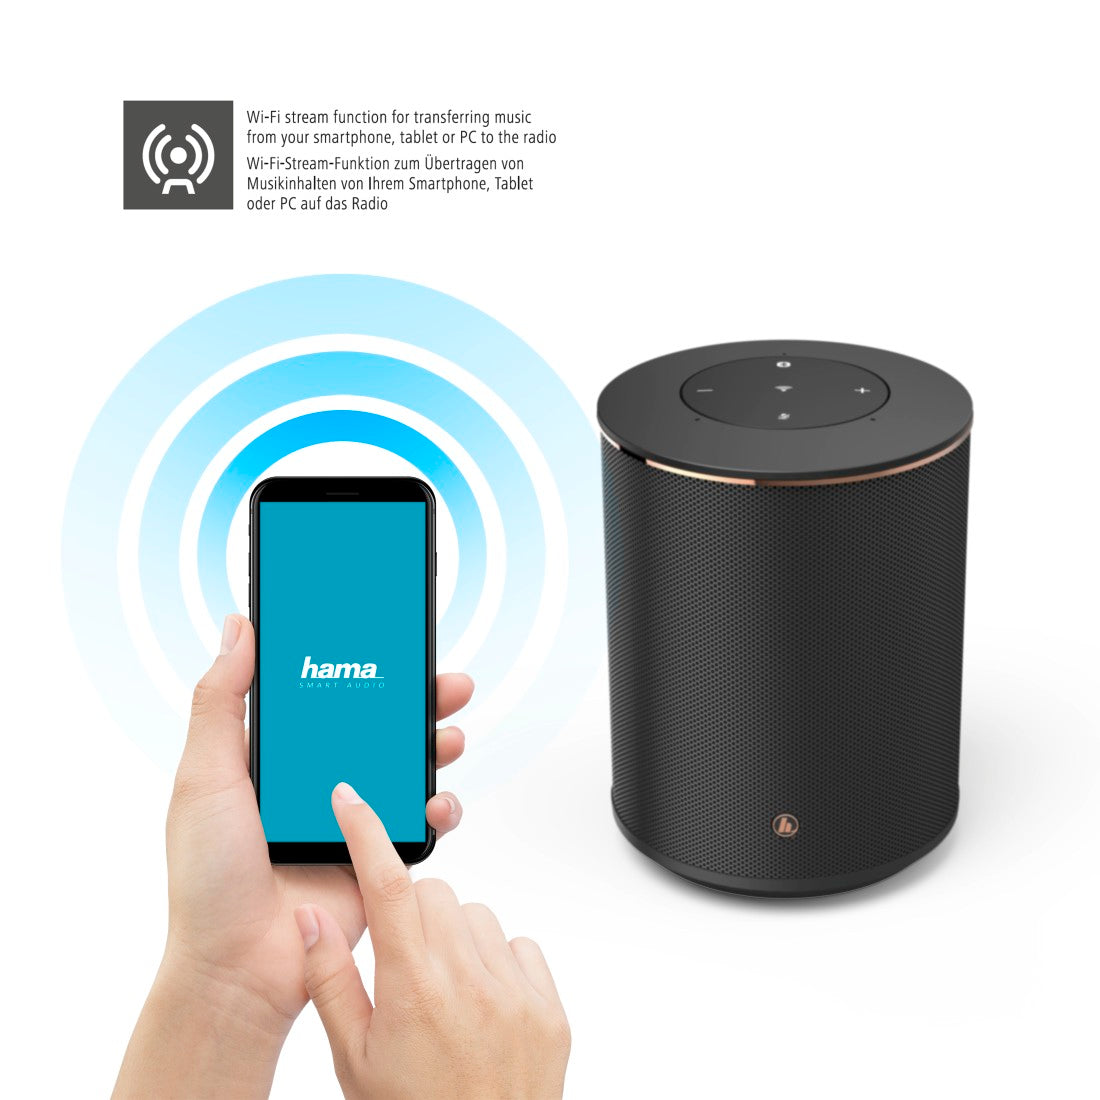 Hama Smart-Speaker "SIRIUM1400ABT", Alexa / Bluetooth®